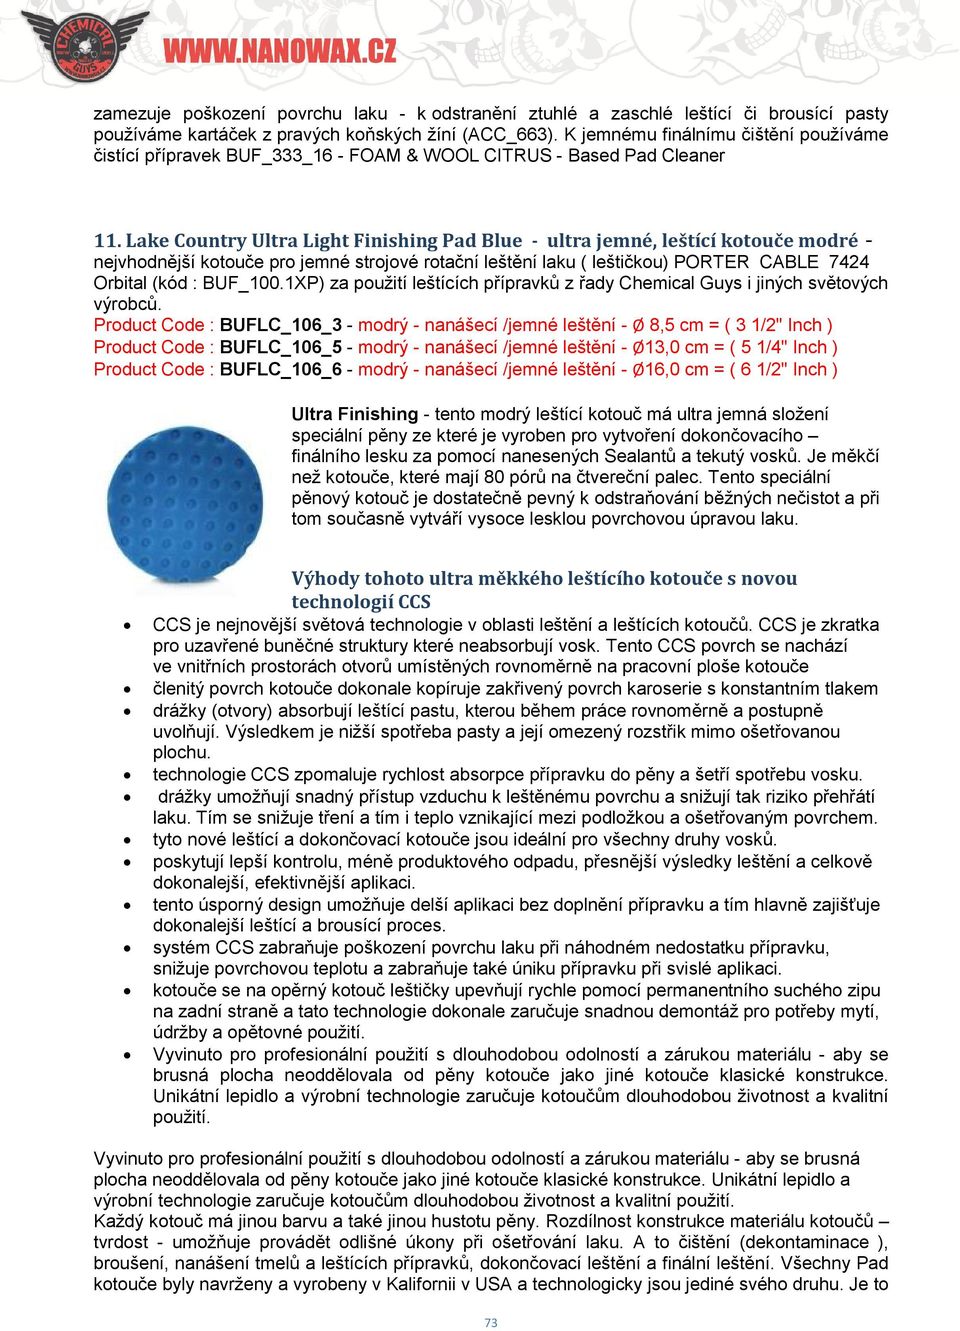 Lake Country Ultra Light Finishing Pad Blue - ultra jemné, leštící kotouče modré - nejvhodnější kotouče pro jemné strojové rotační leštění laku ( leštičkou) PORTER CABLE 7424 Orbital (kód : BUF_100.